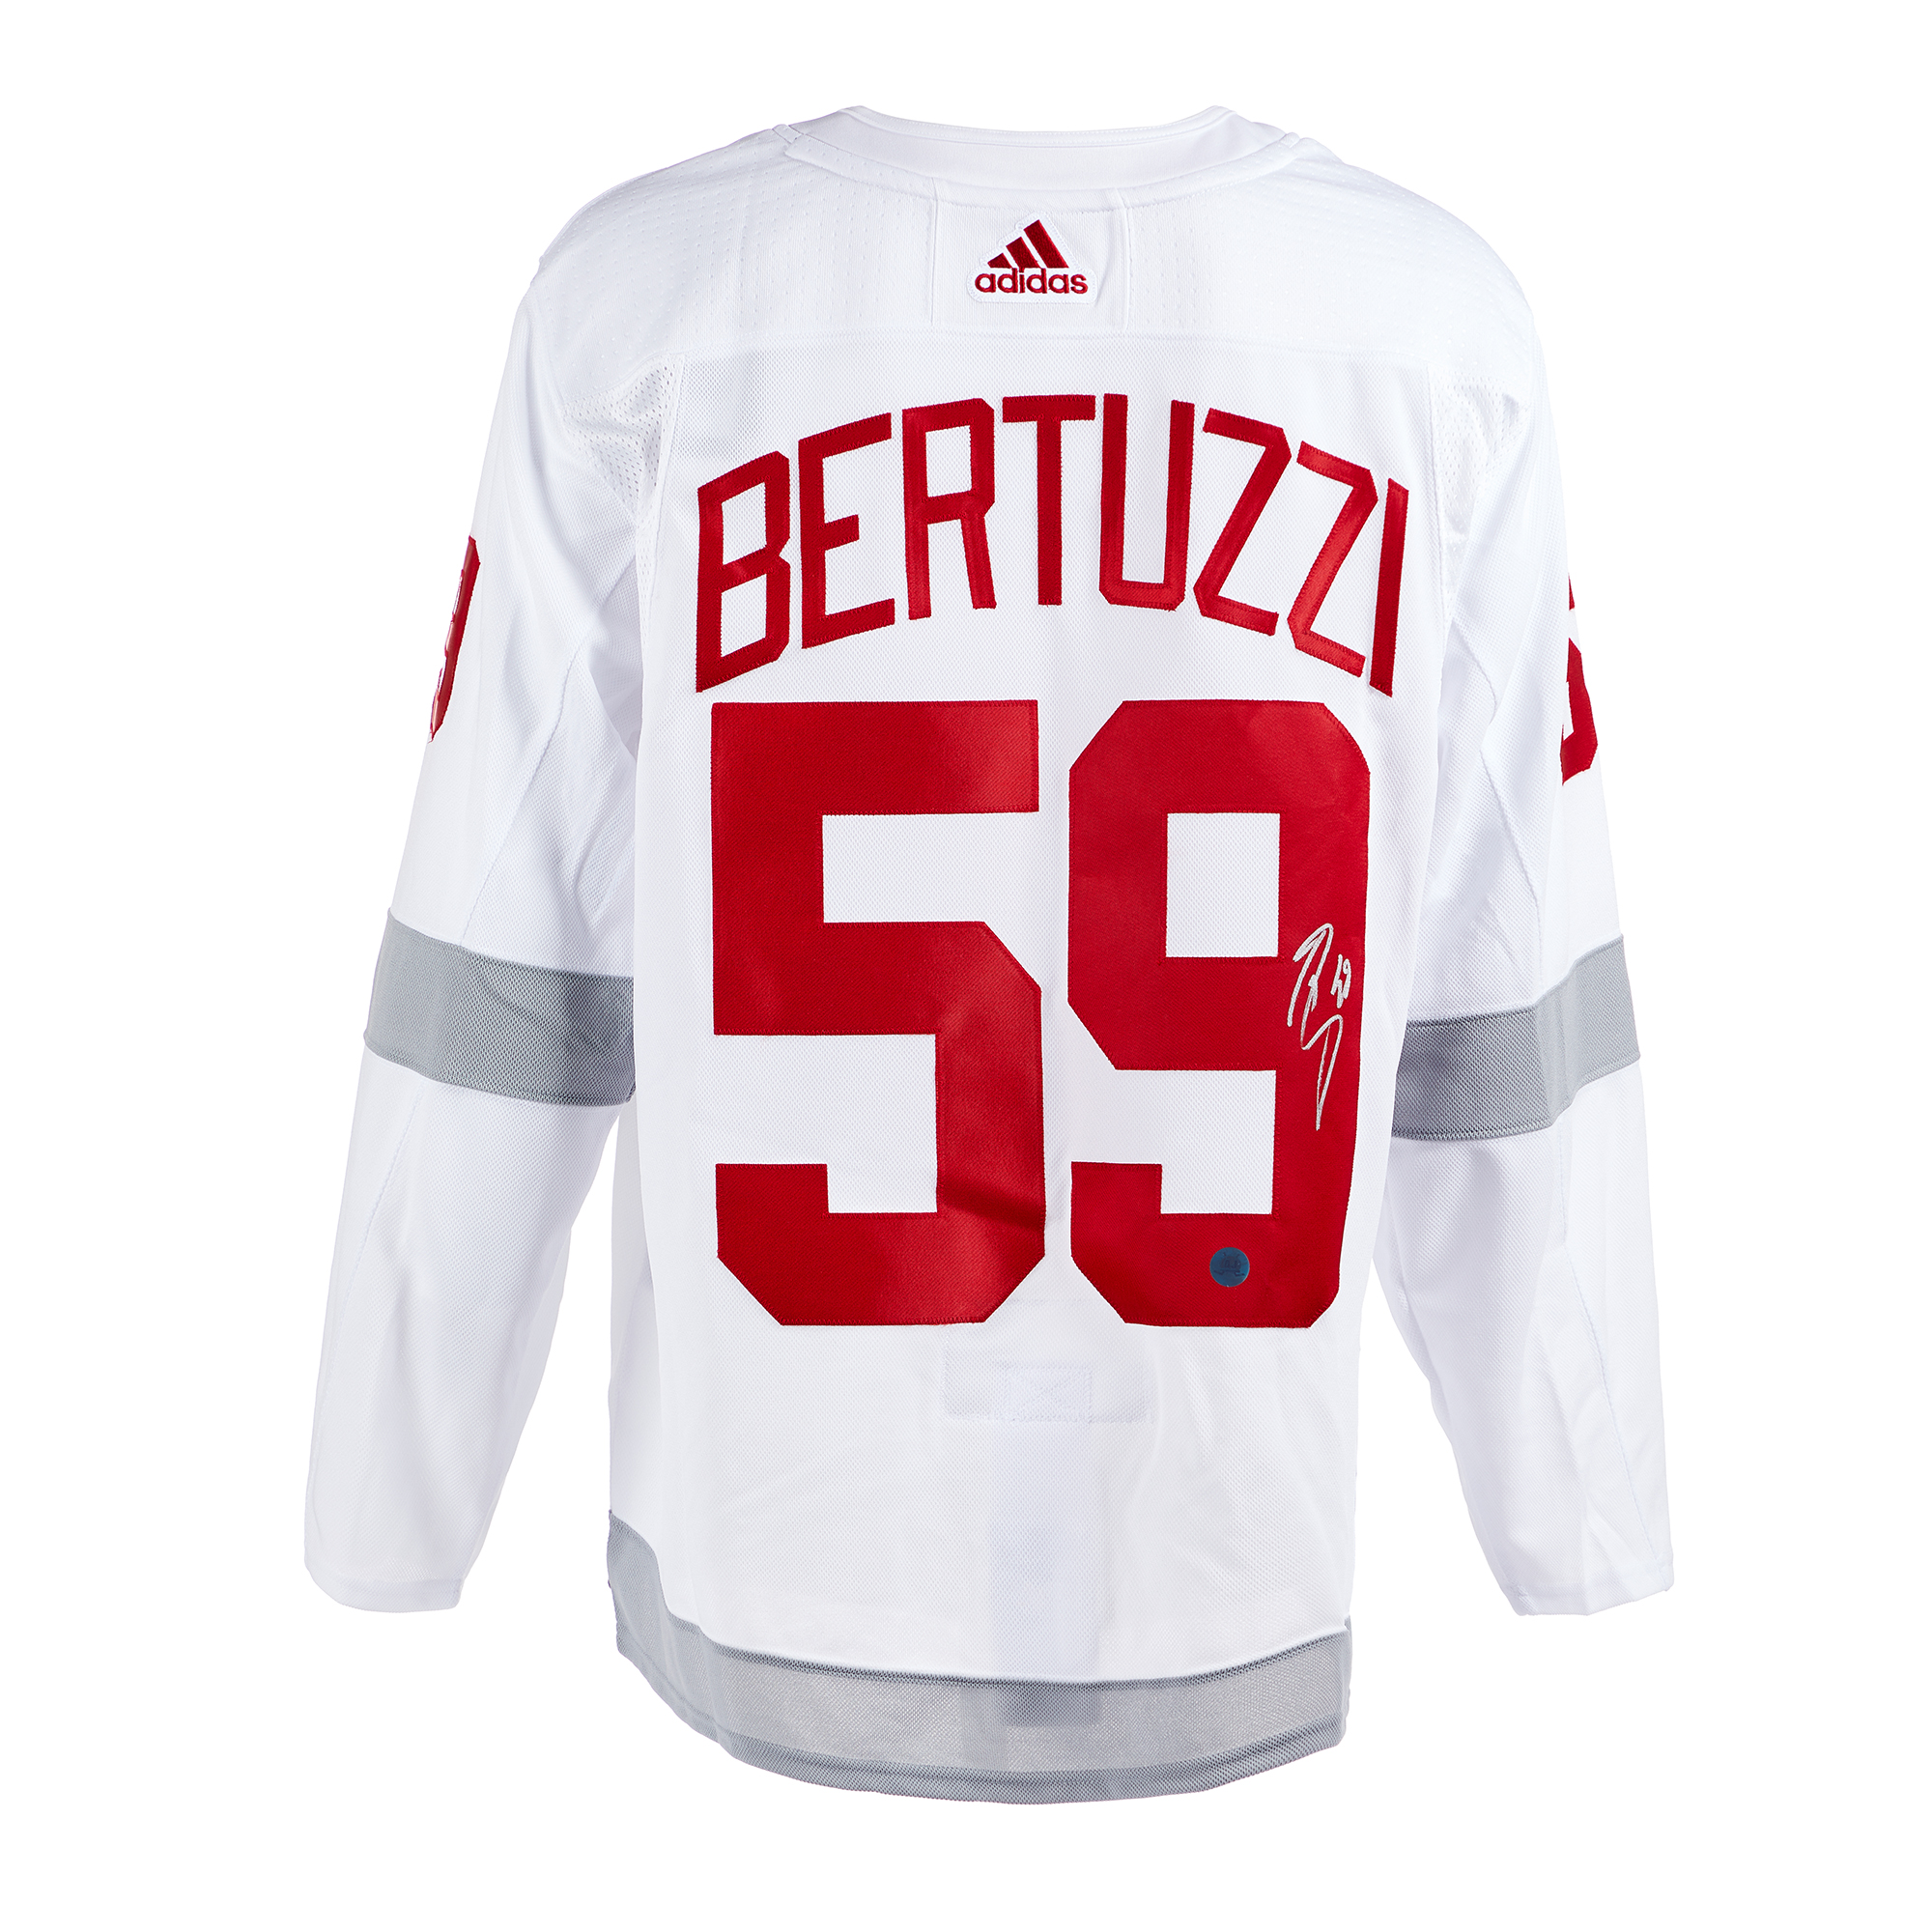 Tyler Bertuzzi Signed Red Wings Jersey (JSA)